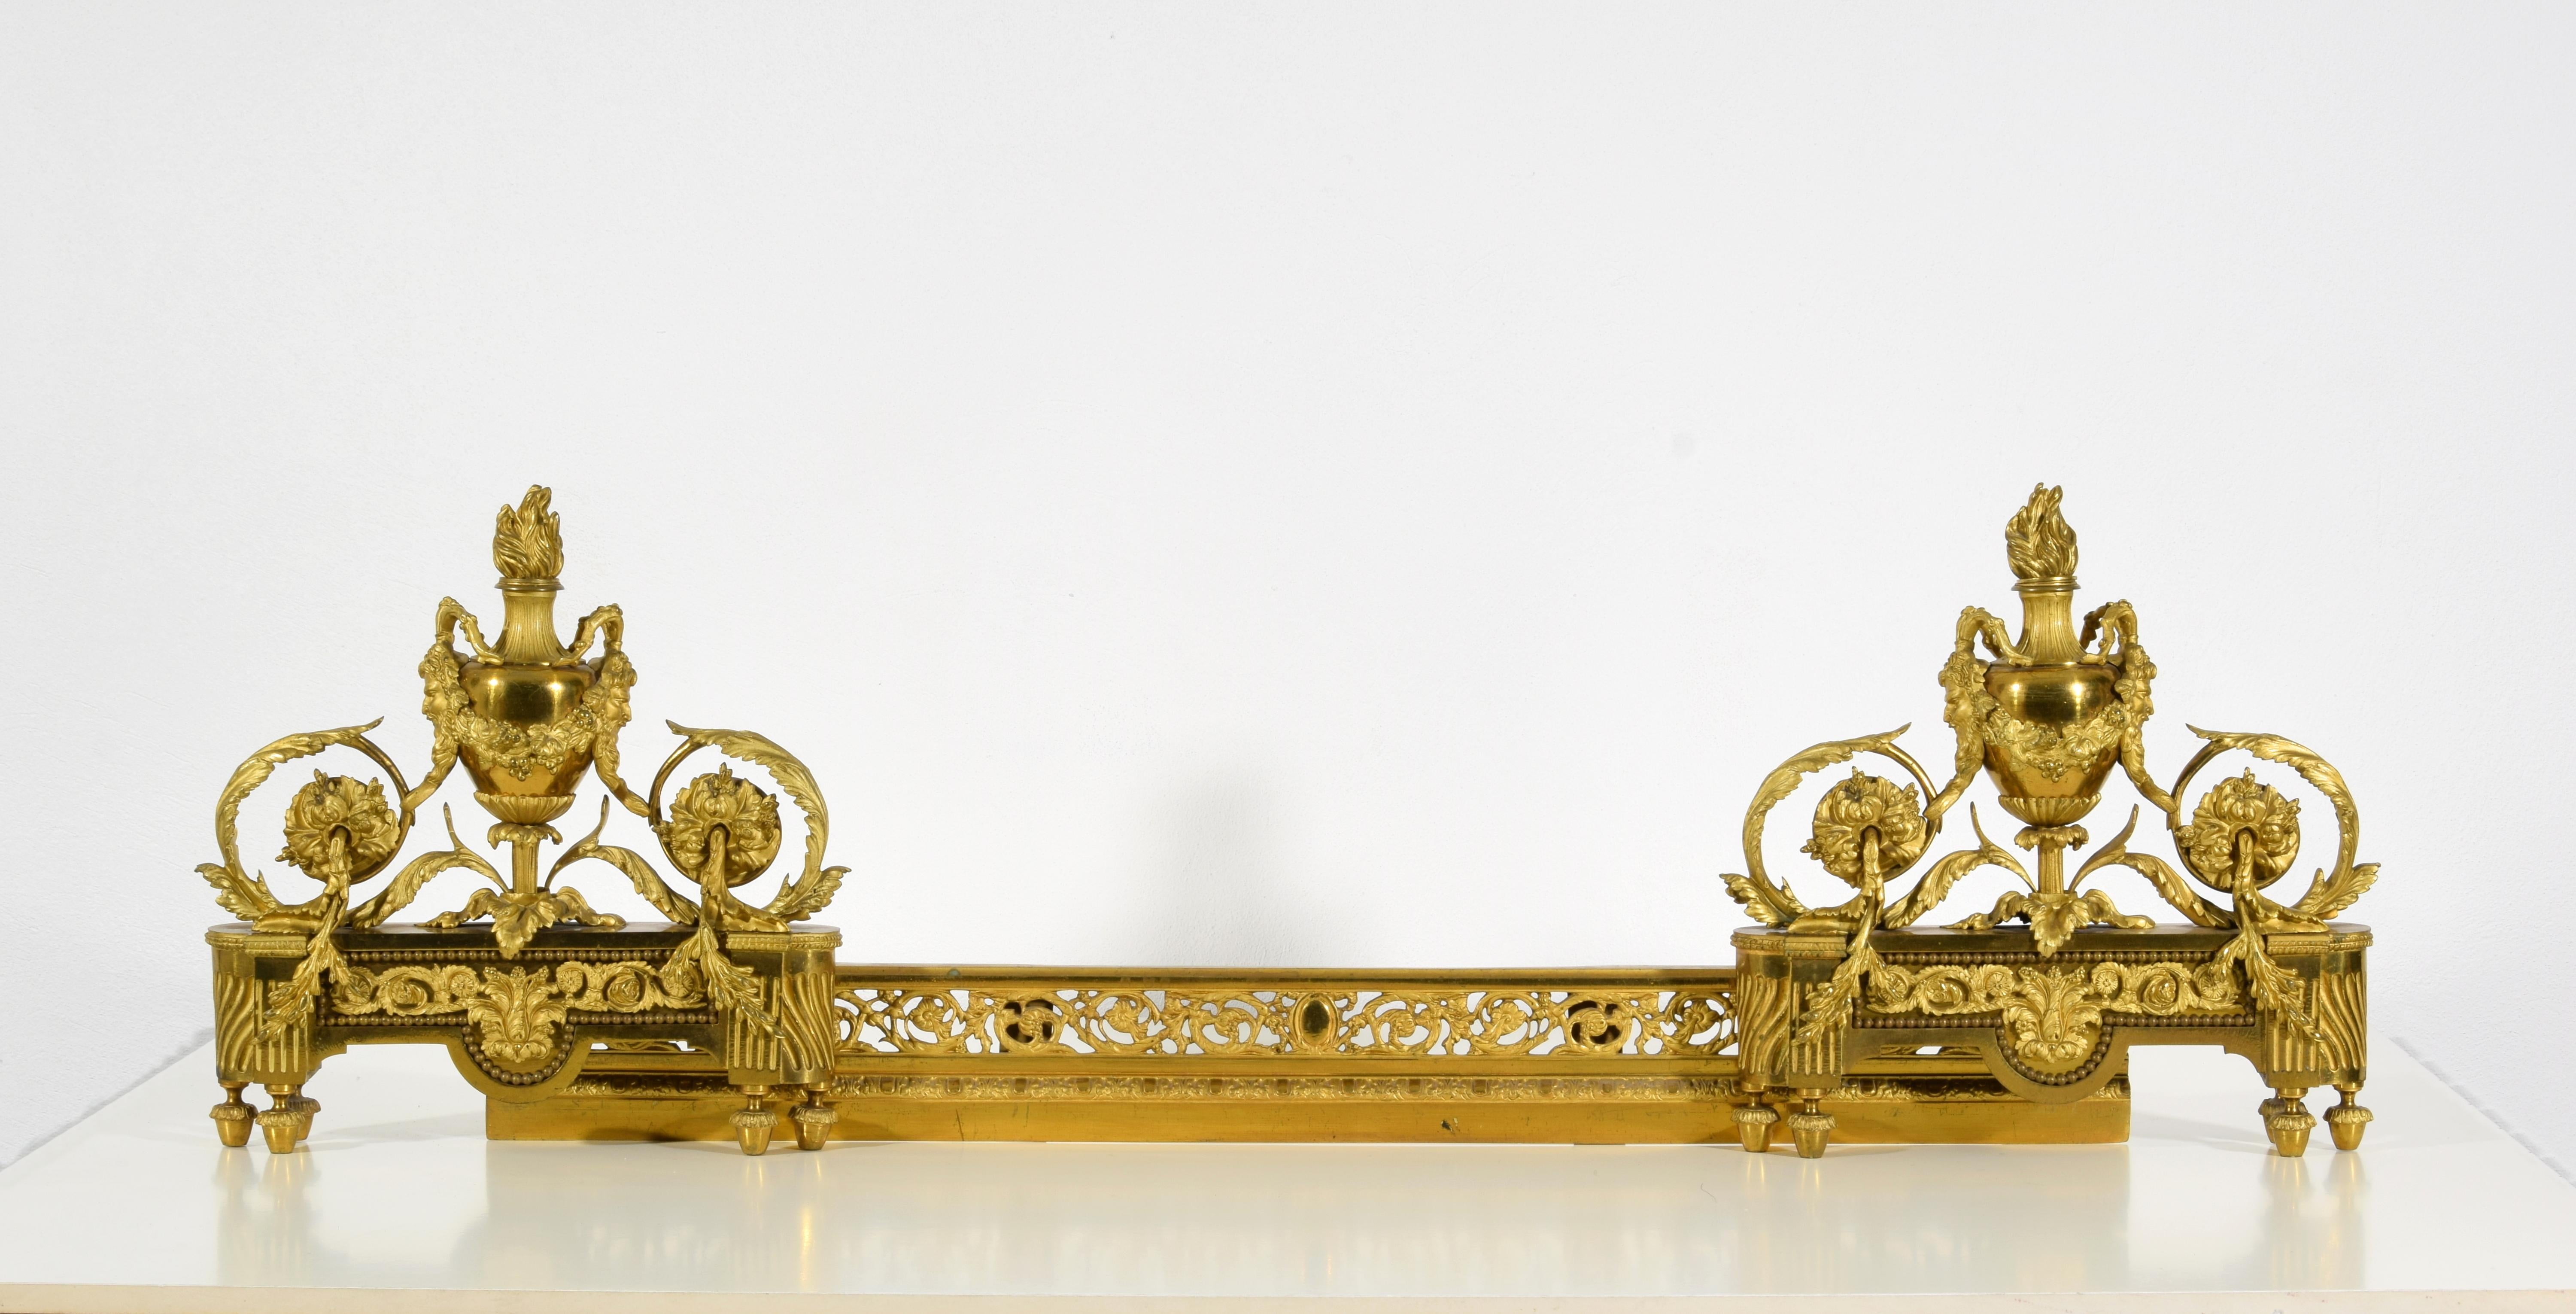 XIXe siècle, Paire de chenets de cheminée en bronze doré de style Louis XVI 
Dimensions : fermé : cm L 97 x H 34 x P 12 ; ouvert au maximum cm 144,5

Cette élégante paire de chenets de cheminée a été réalisée en France au XIXe siècle en bronze doré